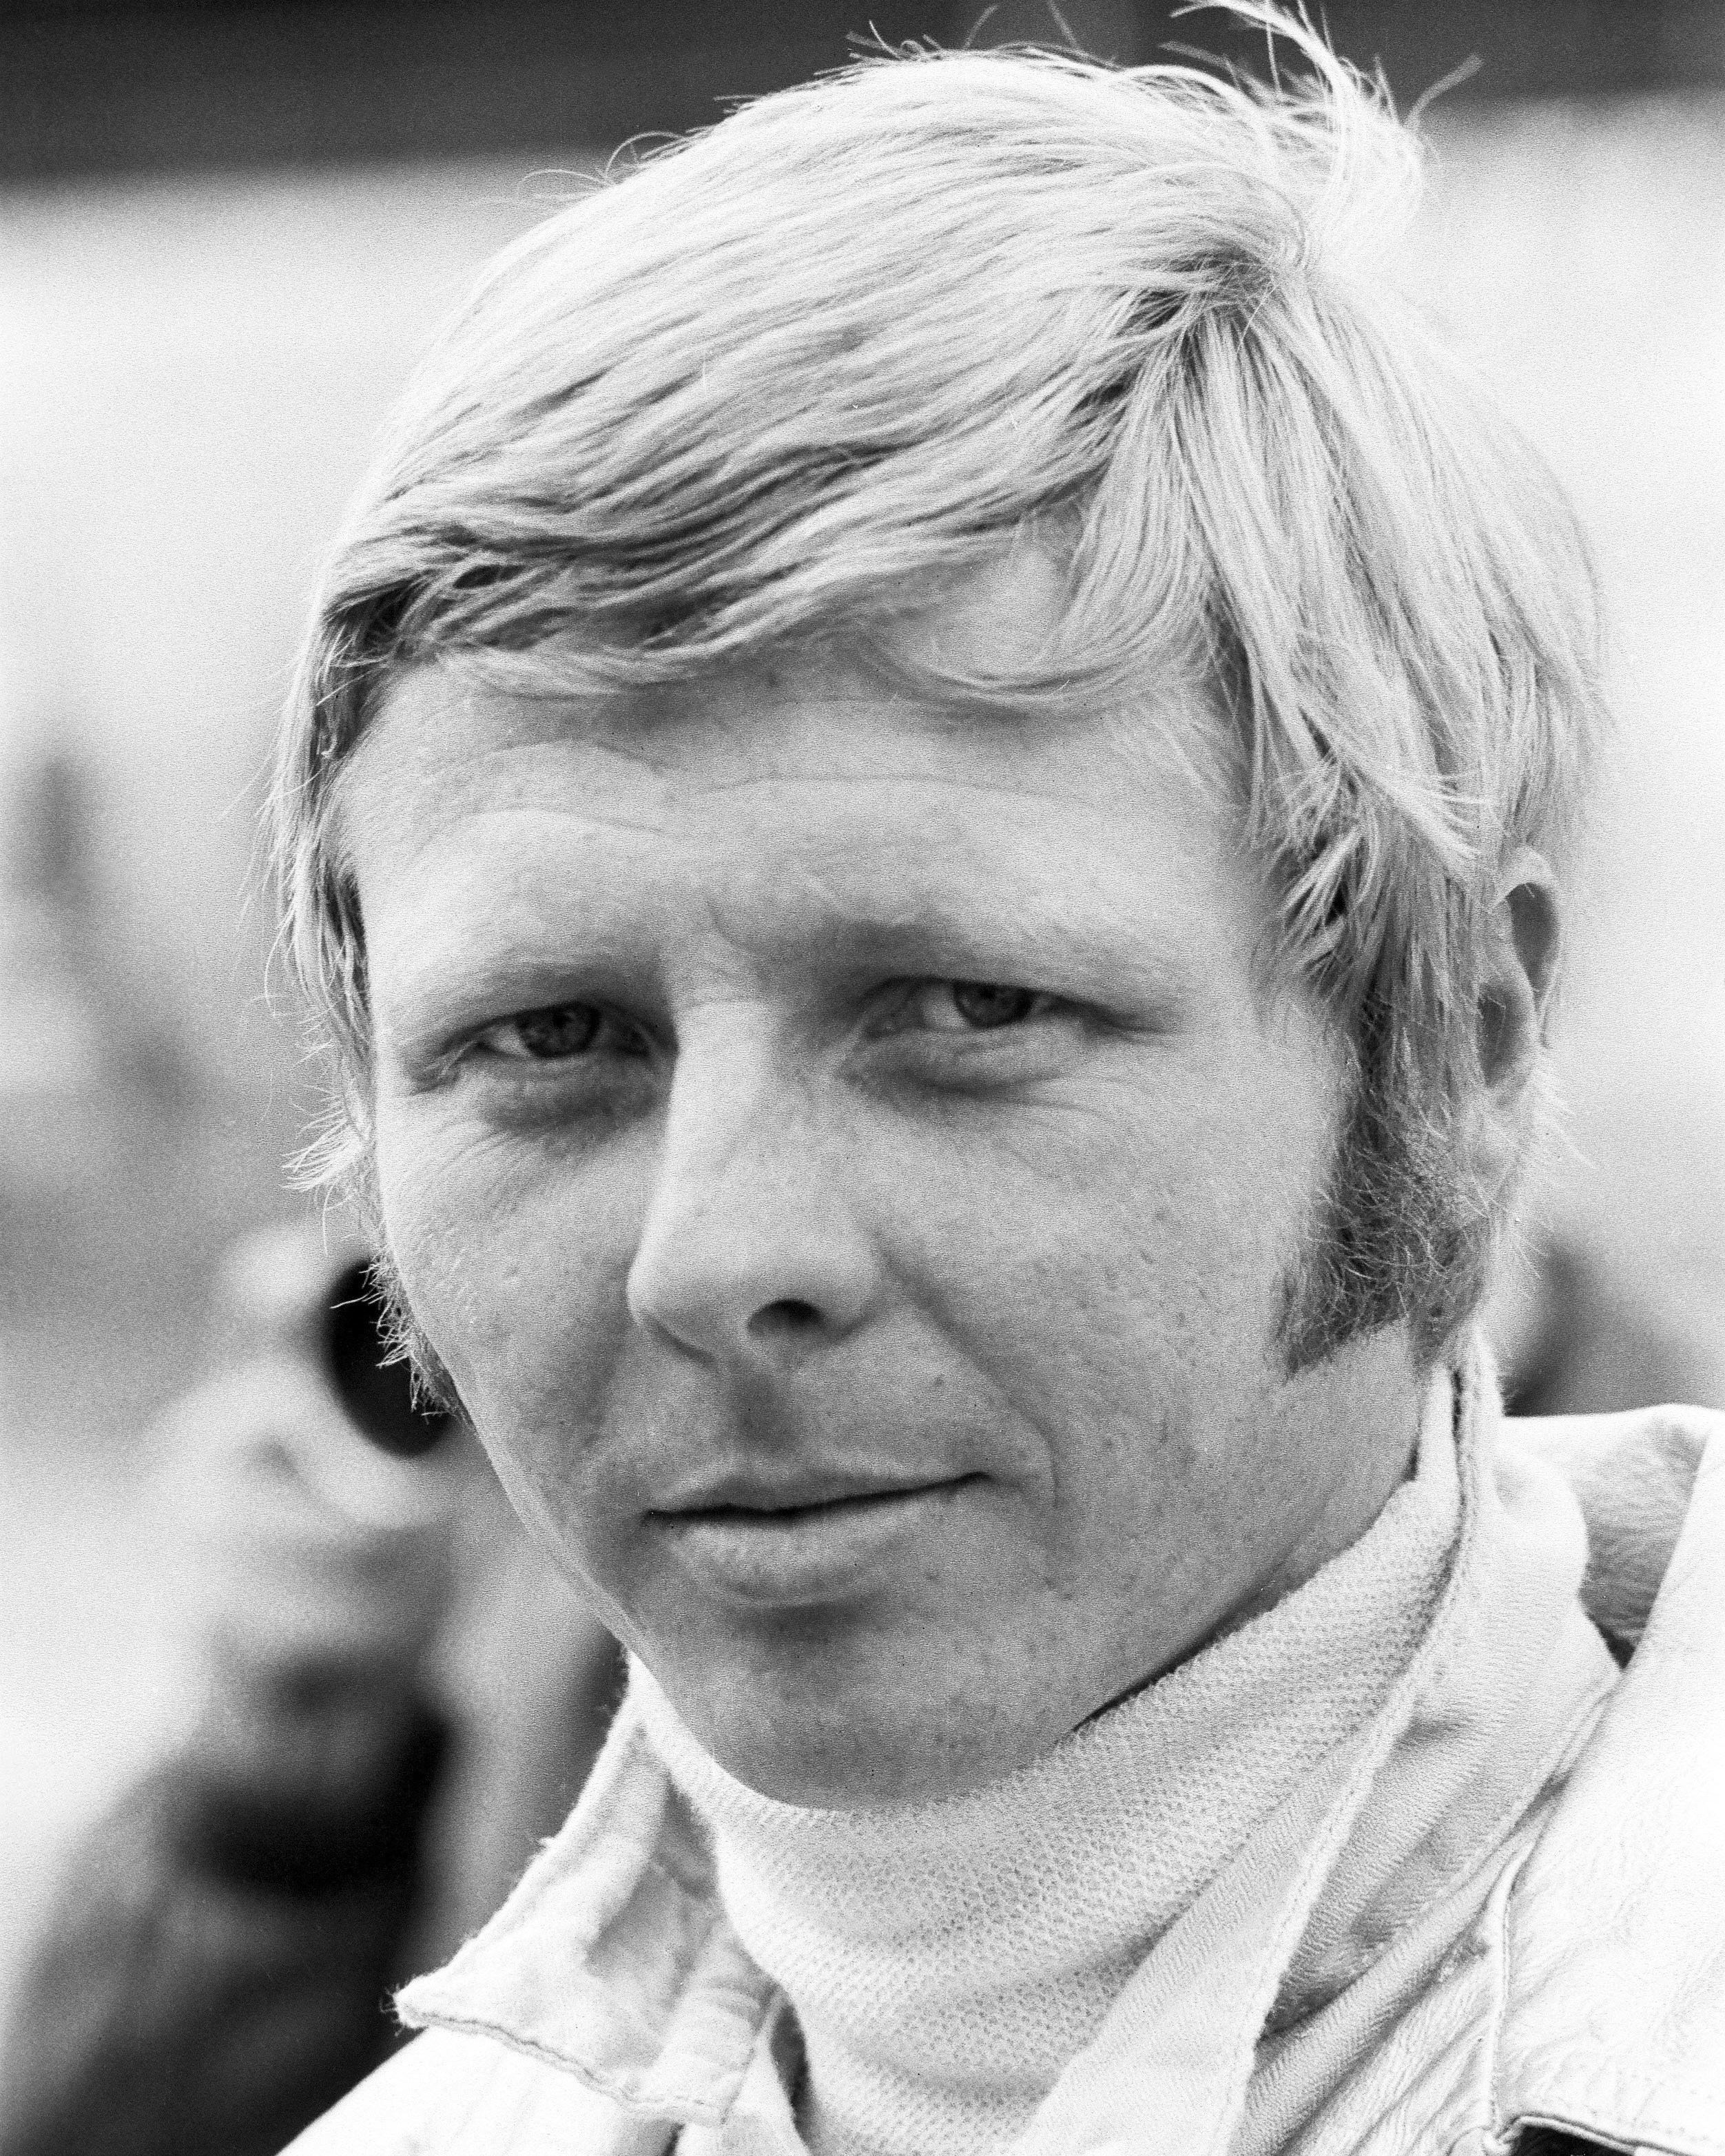 Gijs van Lennep, 1971, Porsche AG